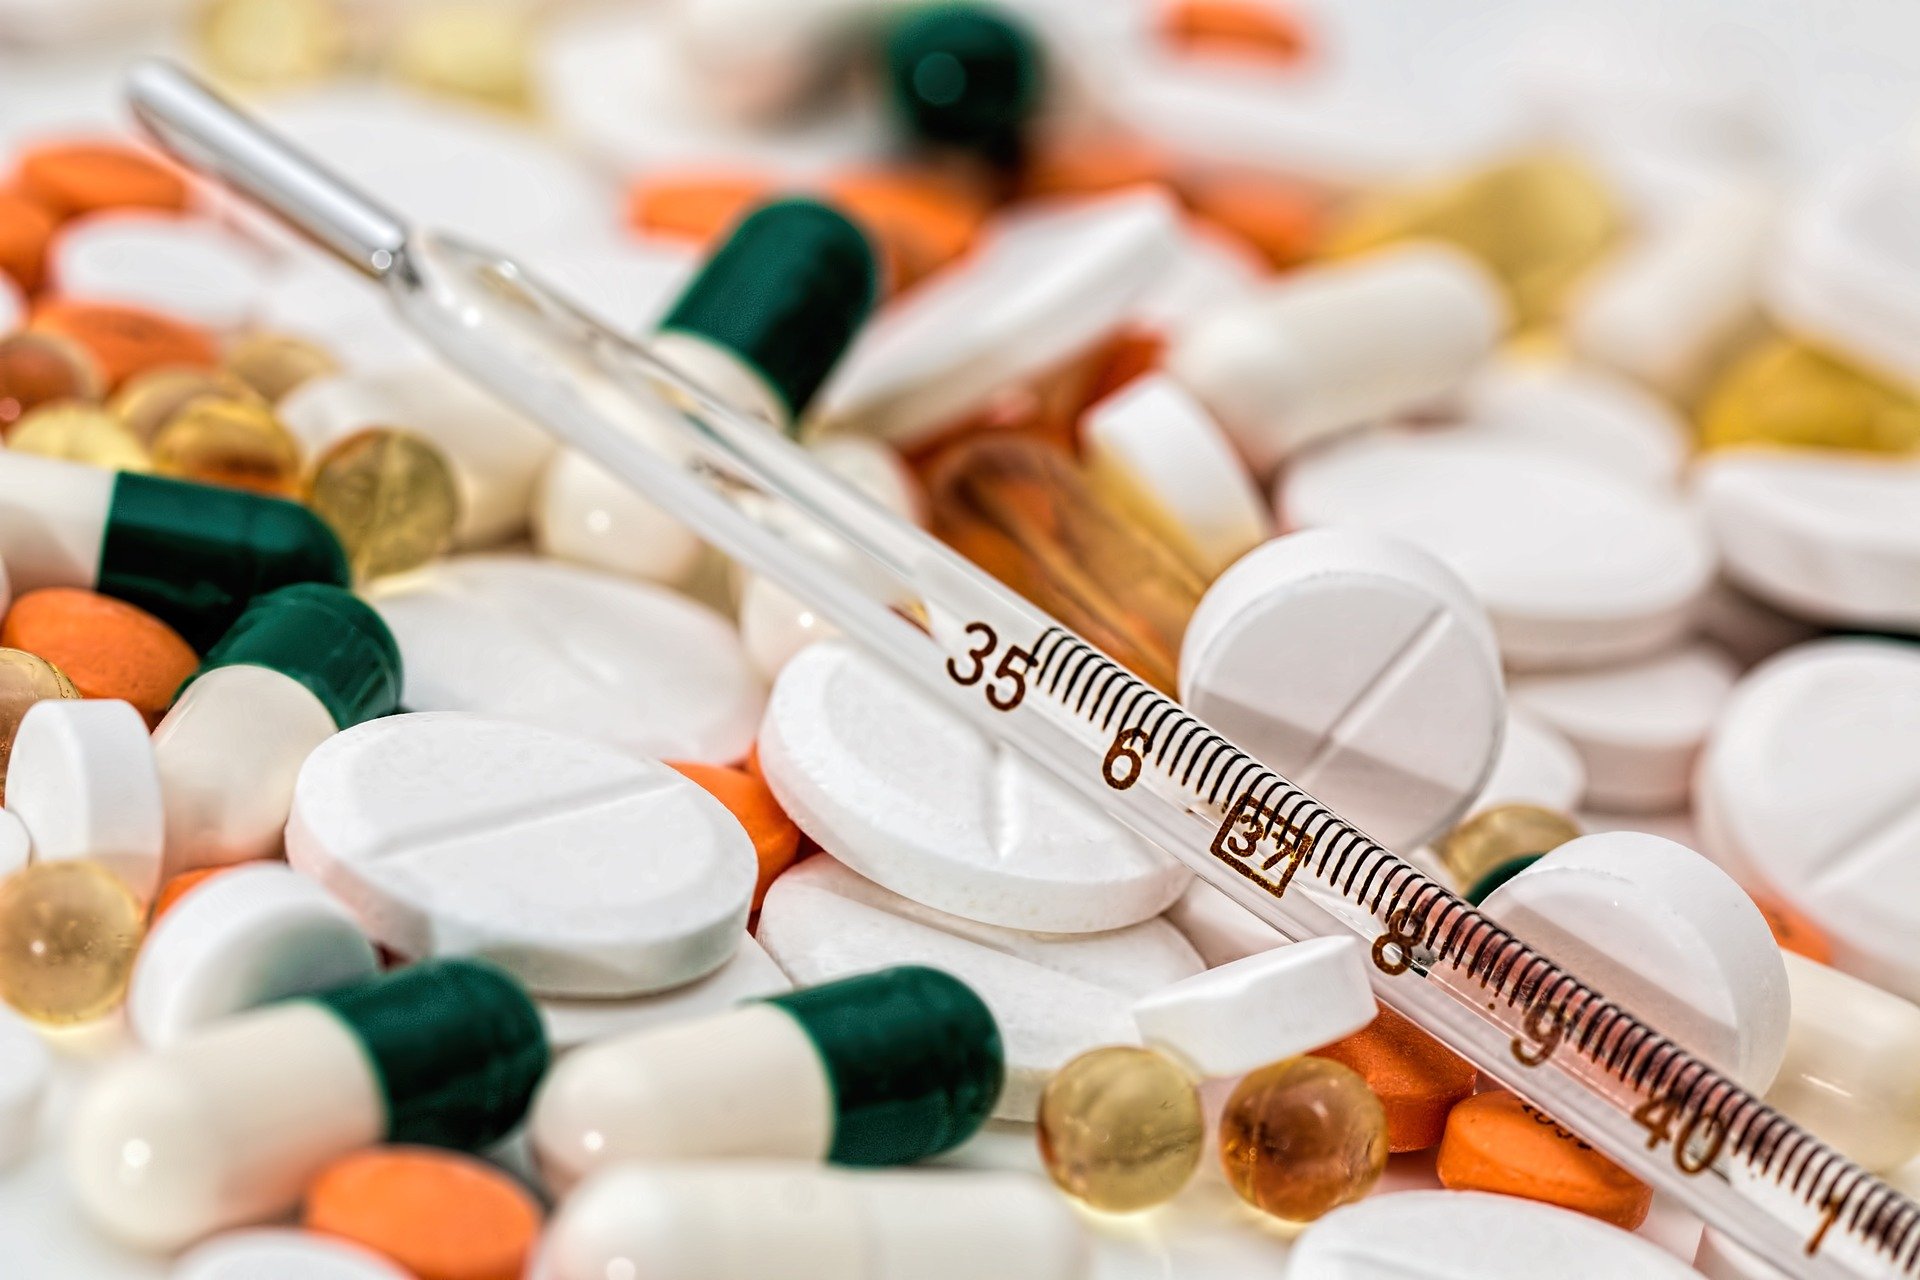 Sube 30% la demanda de medicinas para tratar Covid, dicen farmacias